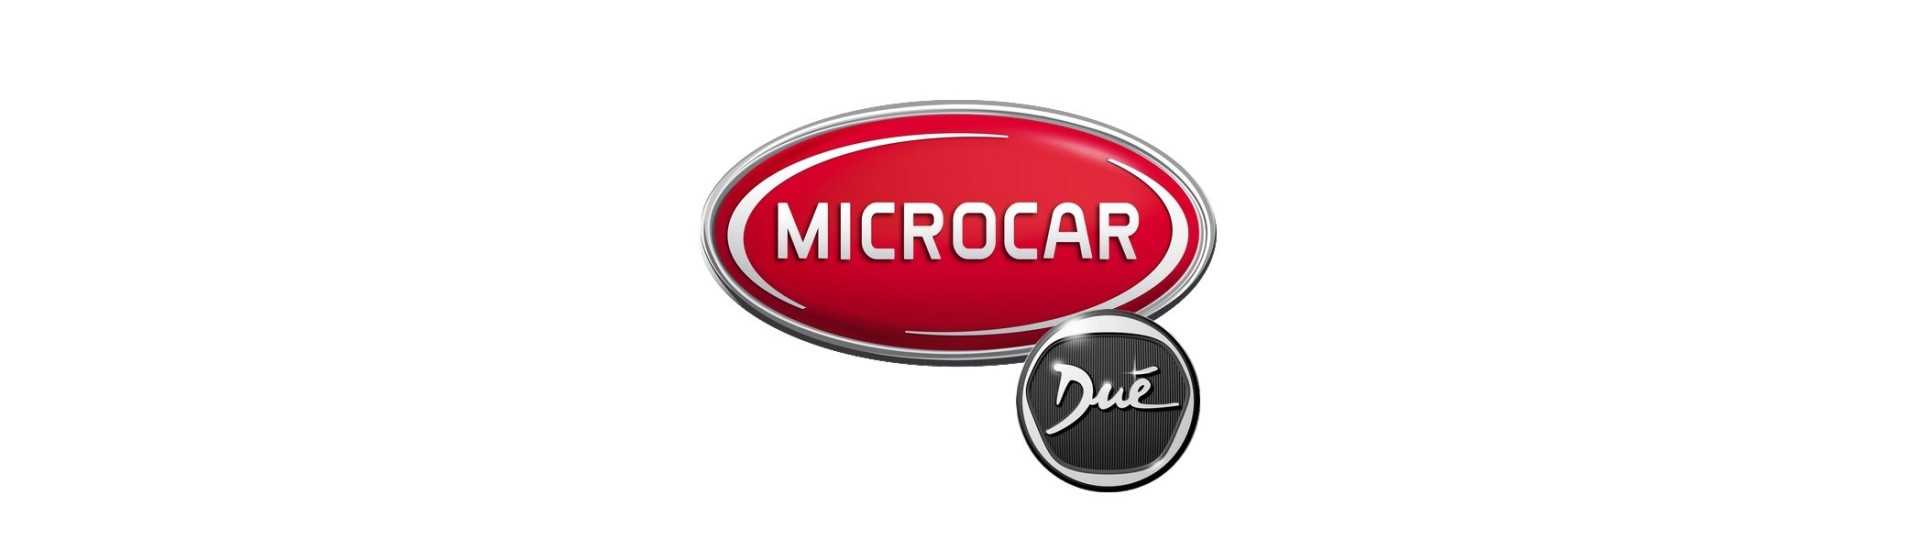 Elektrische Strahlung zum besten Preis Auto ohne Lizenz Microcar Dué